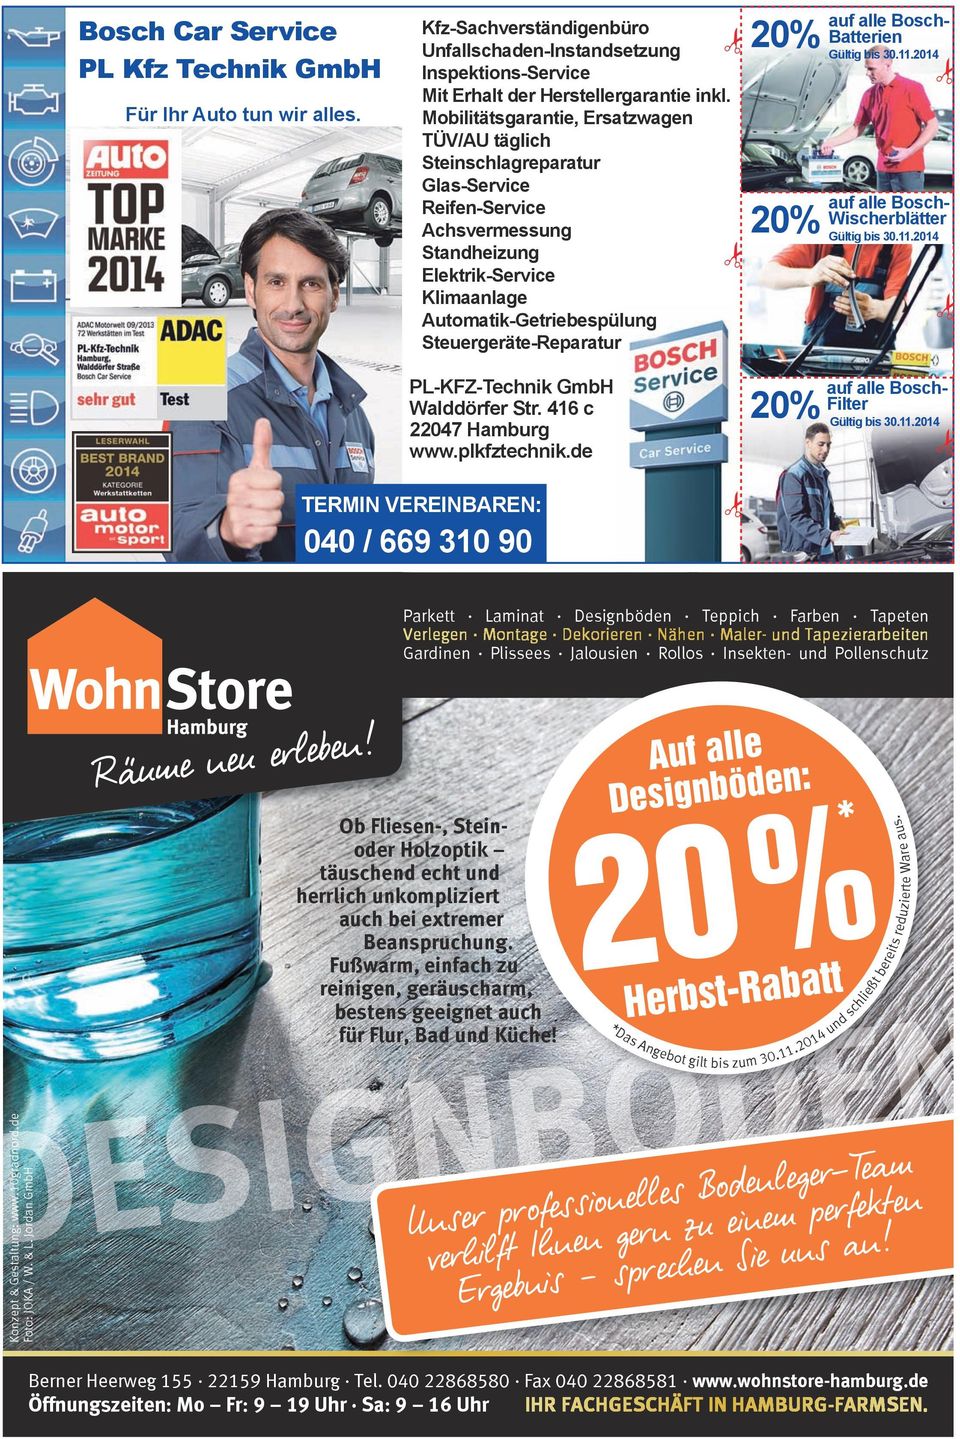 Steuergeräte-Reparatur 20% 20% auf alle Bosch- Batterien Gültig bis 30.11.2014 auf alle Bosch- Wischerblätter Gültig bis 30.11.2014 PL-KFZ-Technik GmbH Walddörfer Str. 416 c 22047 Hamburg www.